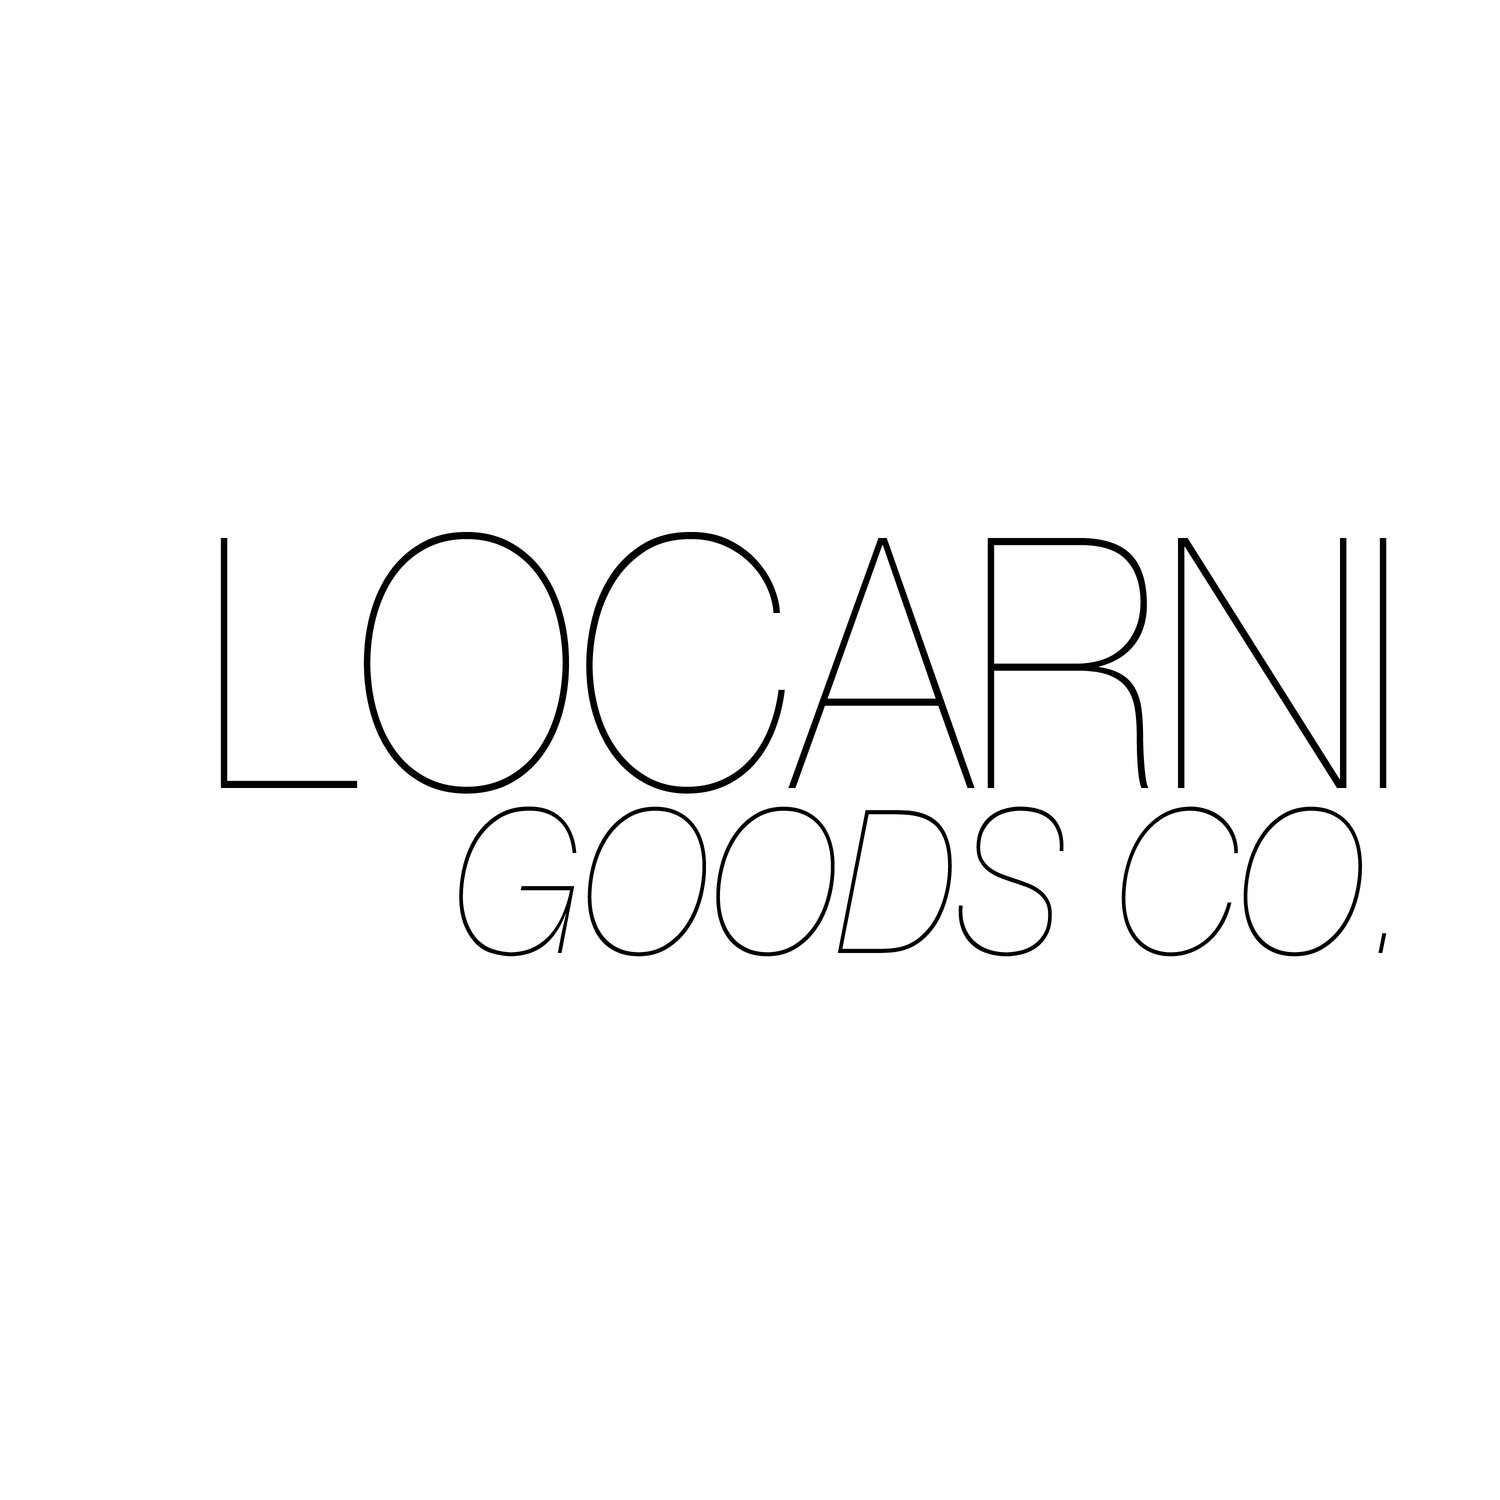 Locarni Goods Co.